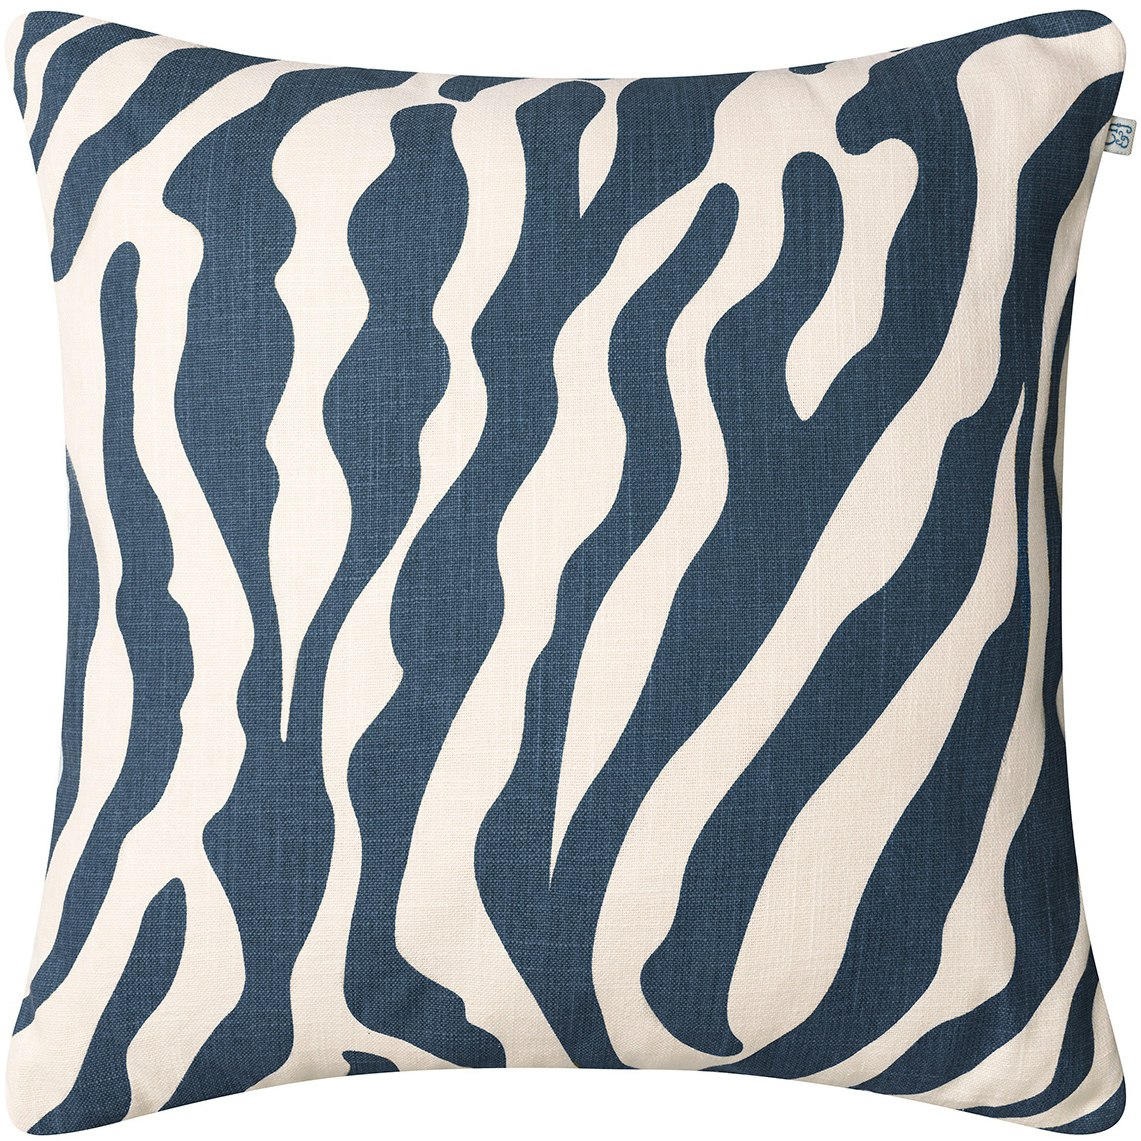 Zebra Kussen 50x50 cm Voor Buiten, Blauw / Gebroken Wit